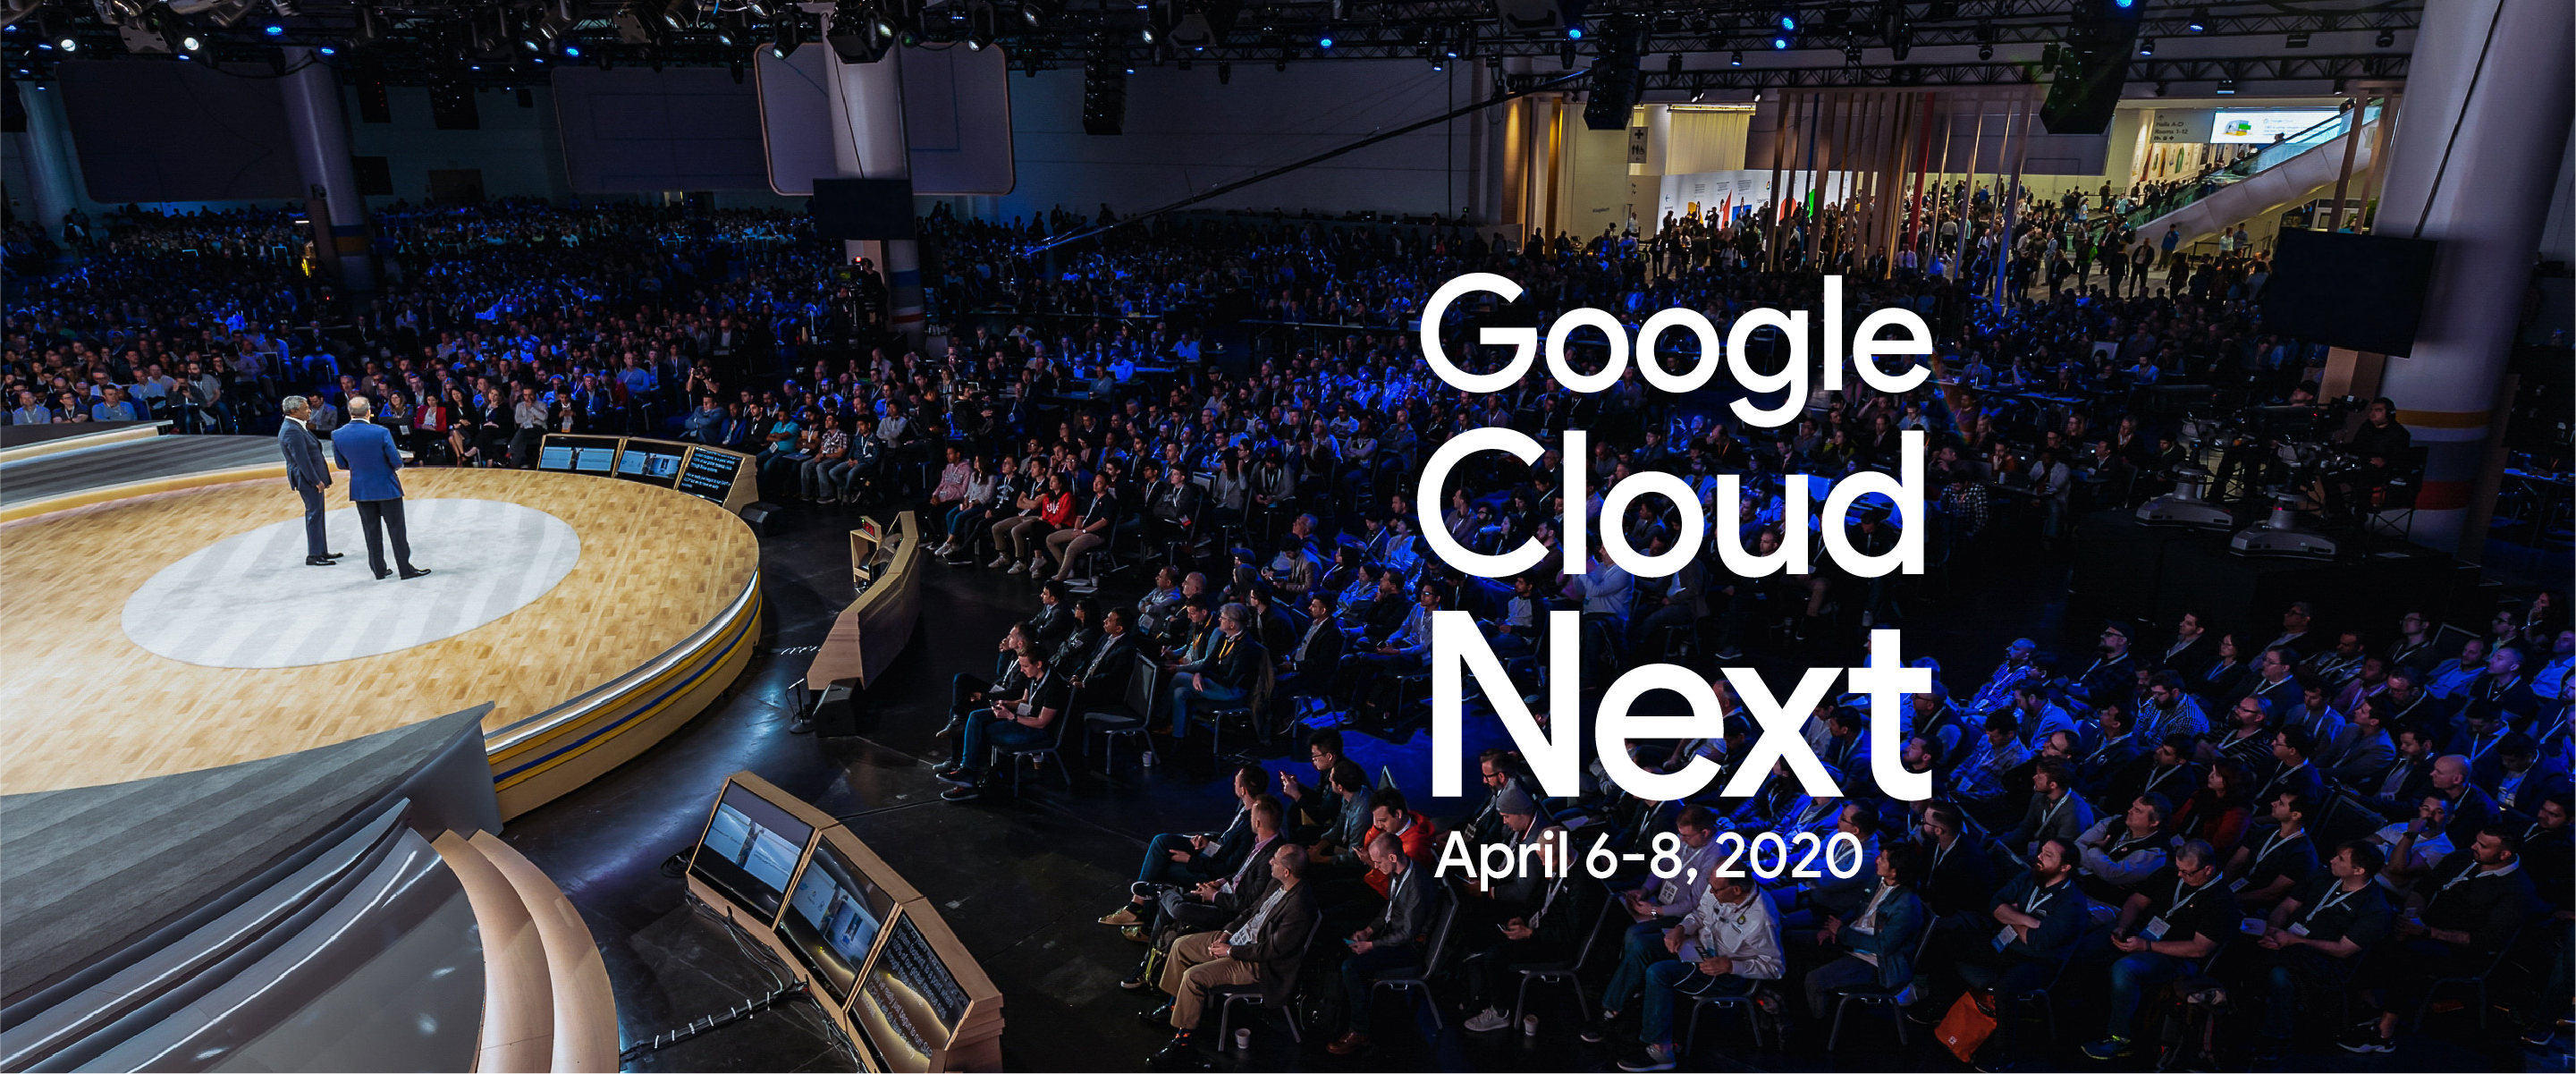 谷歌宣布Google Cloud Next '20大会延期